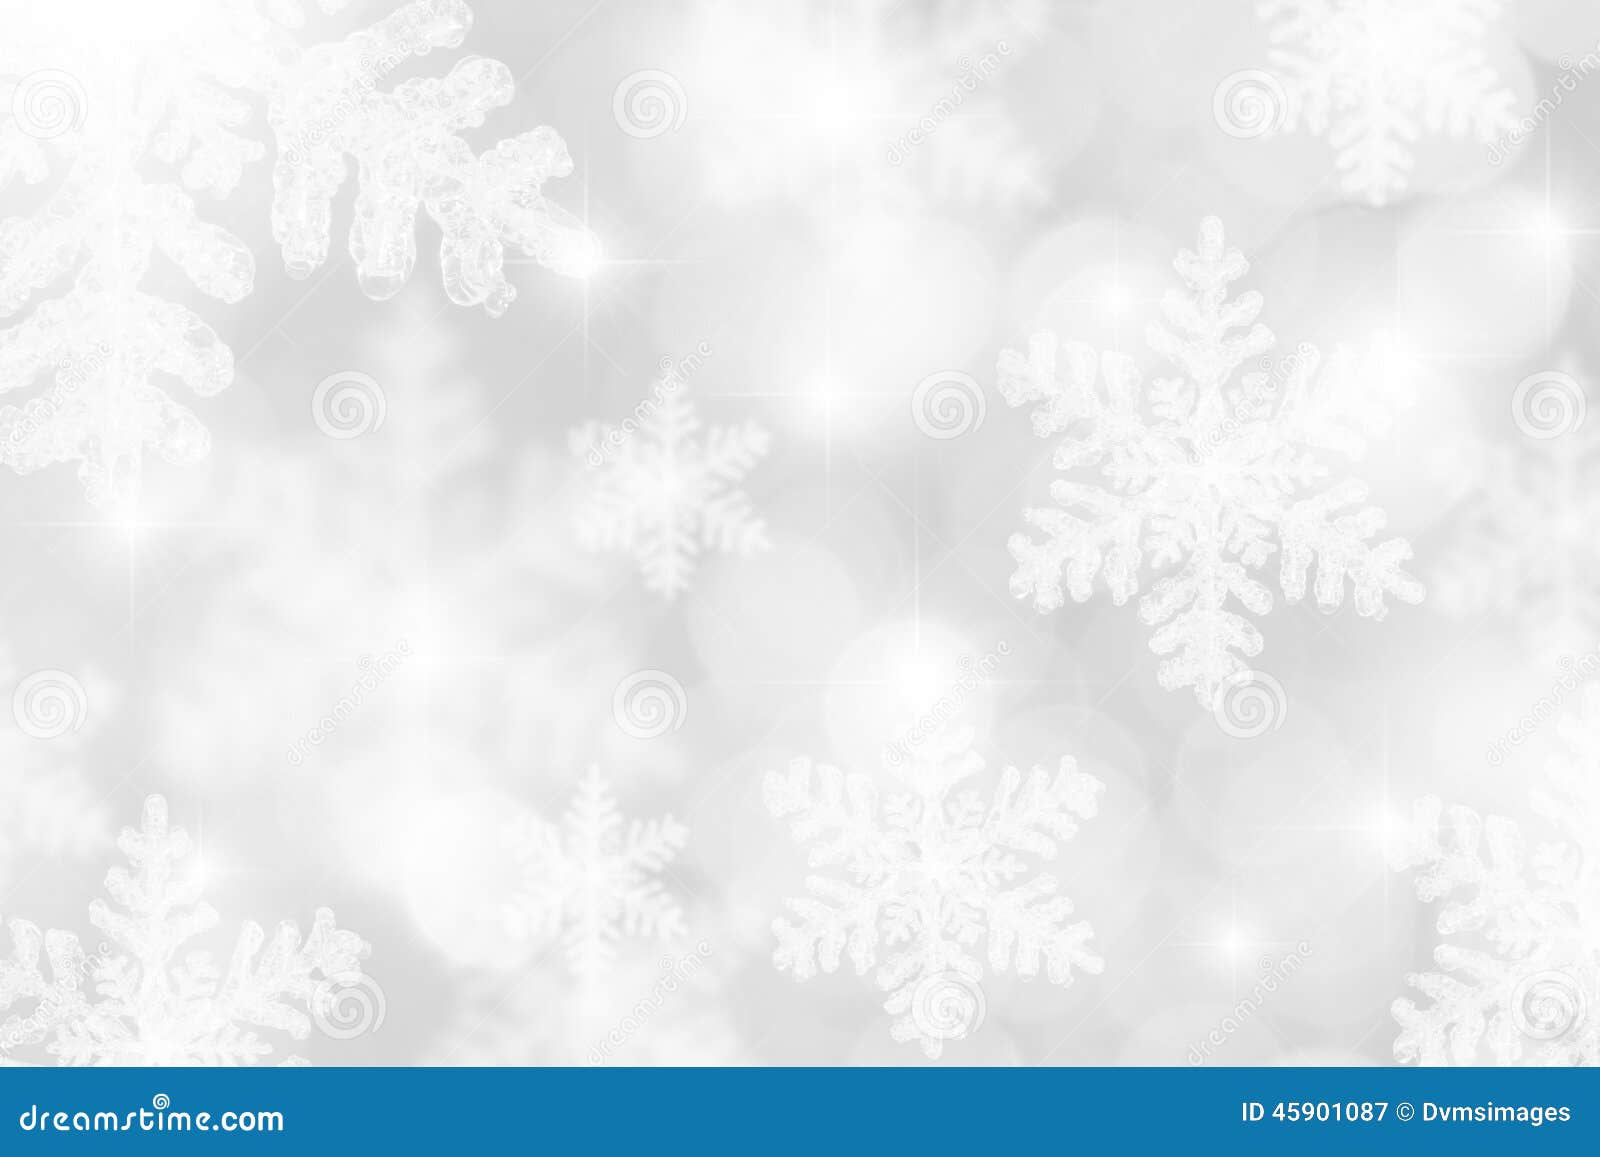 Silver White Snowflakes Background Stock Illustration